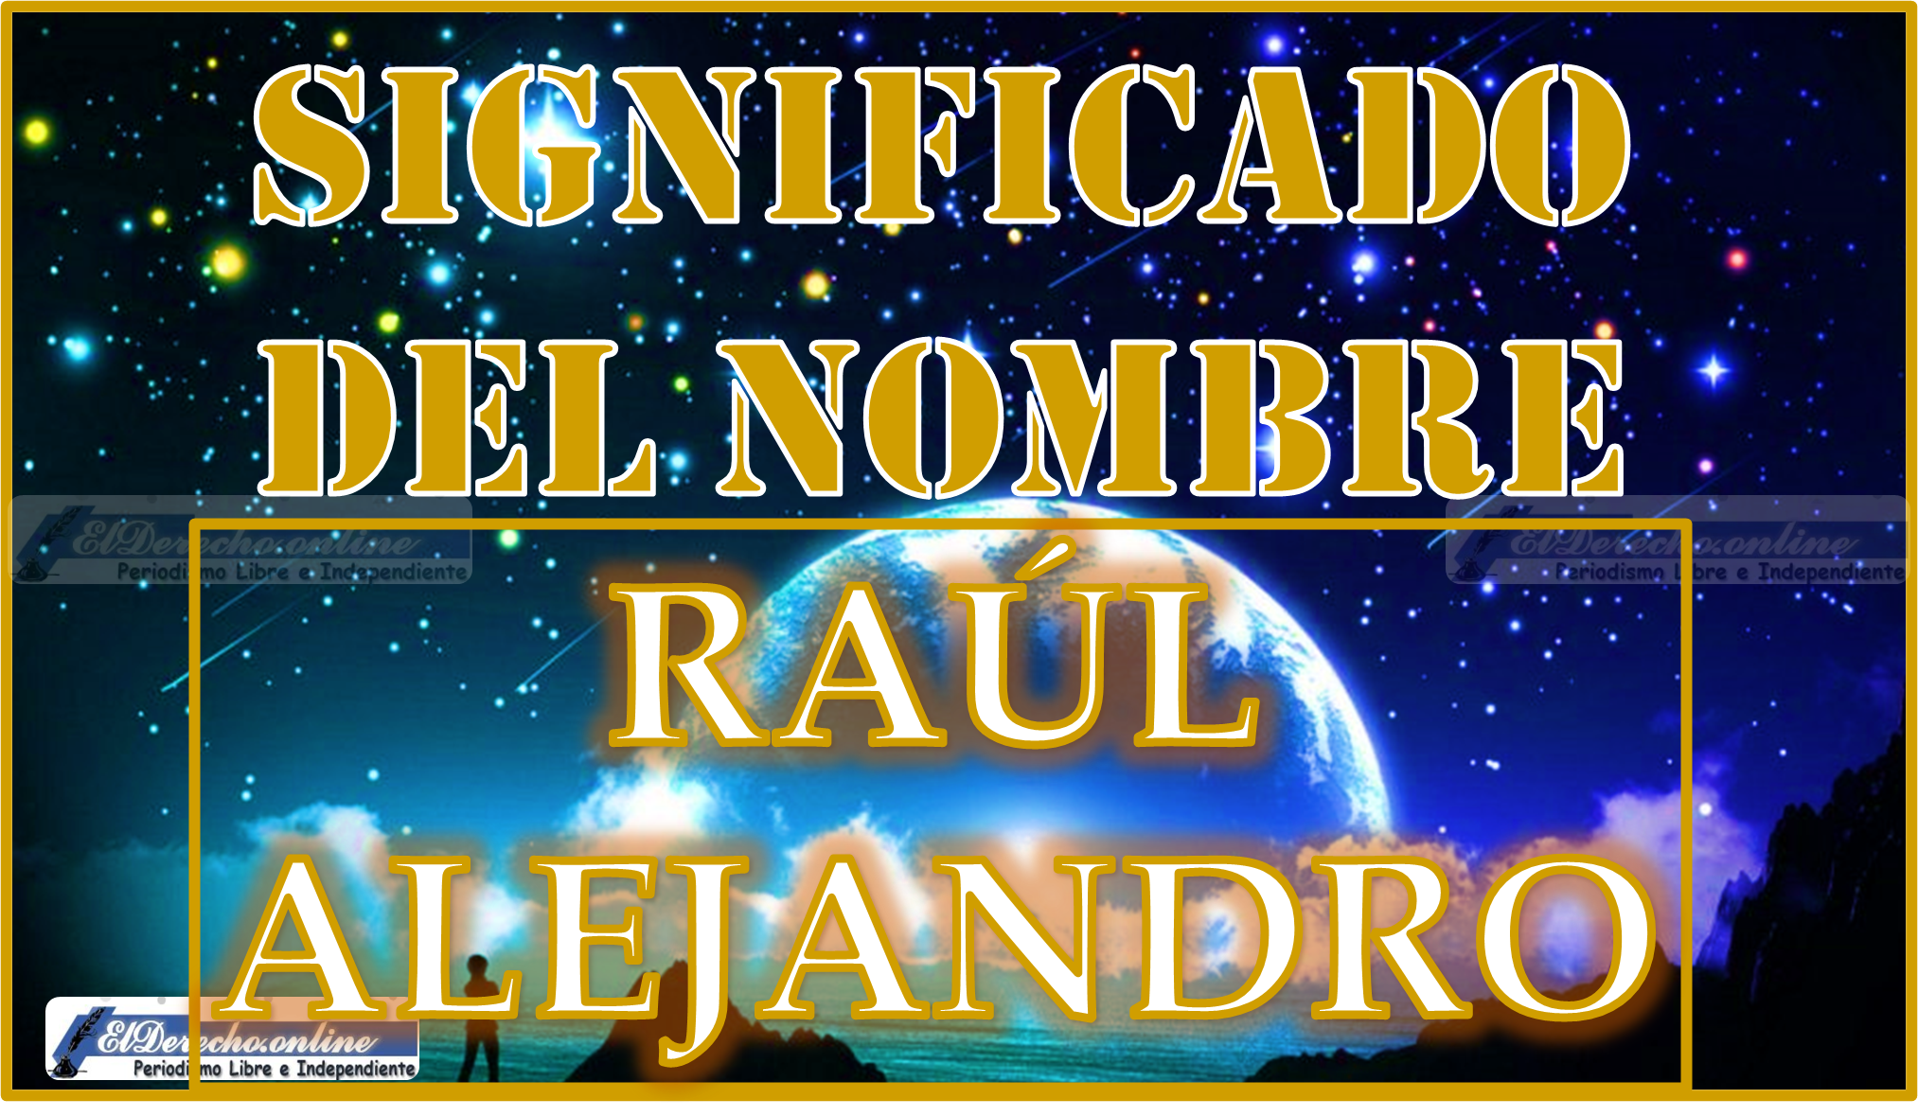 Significado del nombre Raúl Alejandro, su origen y más